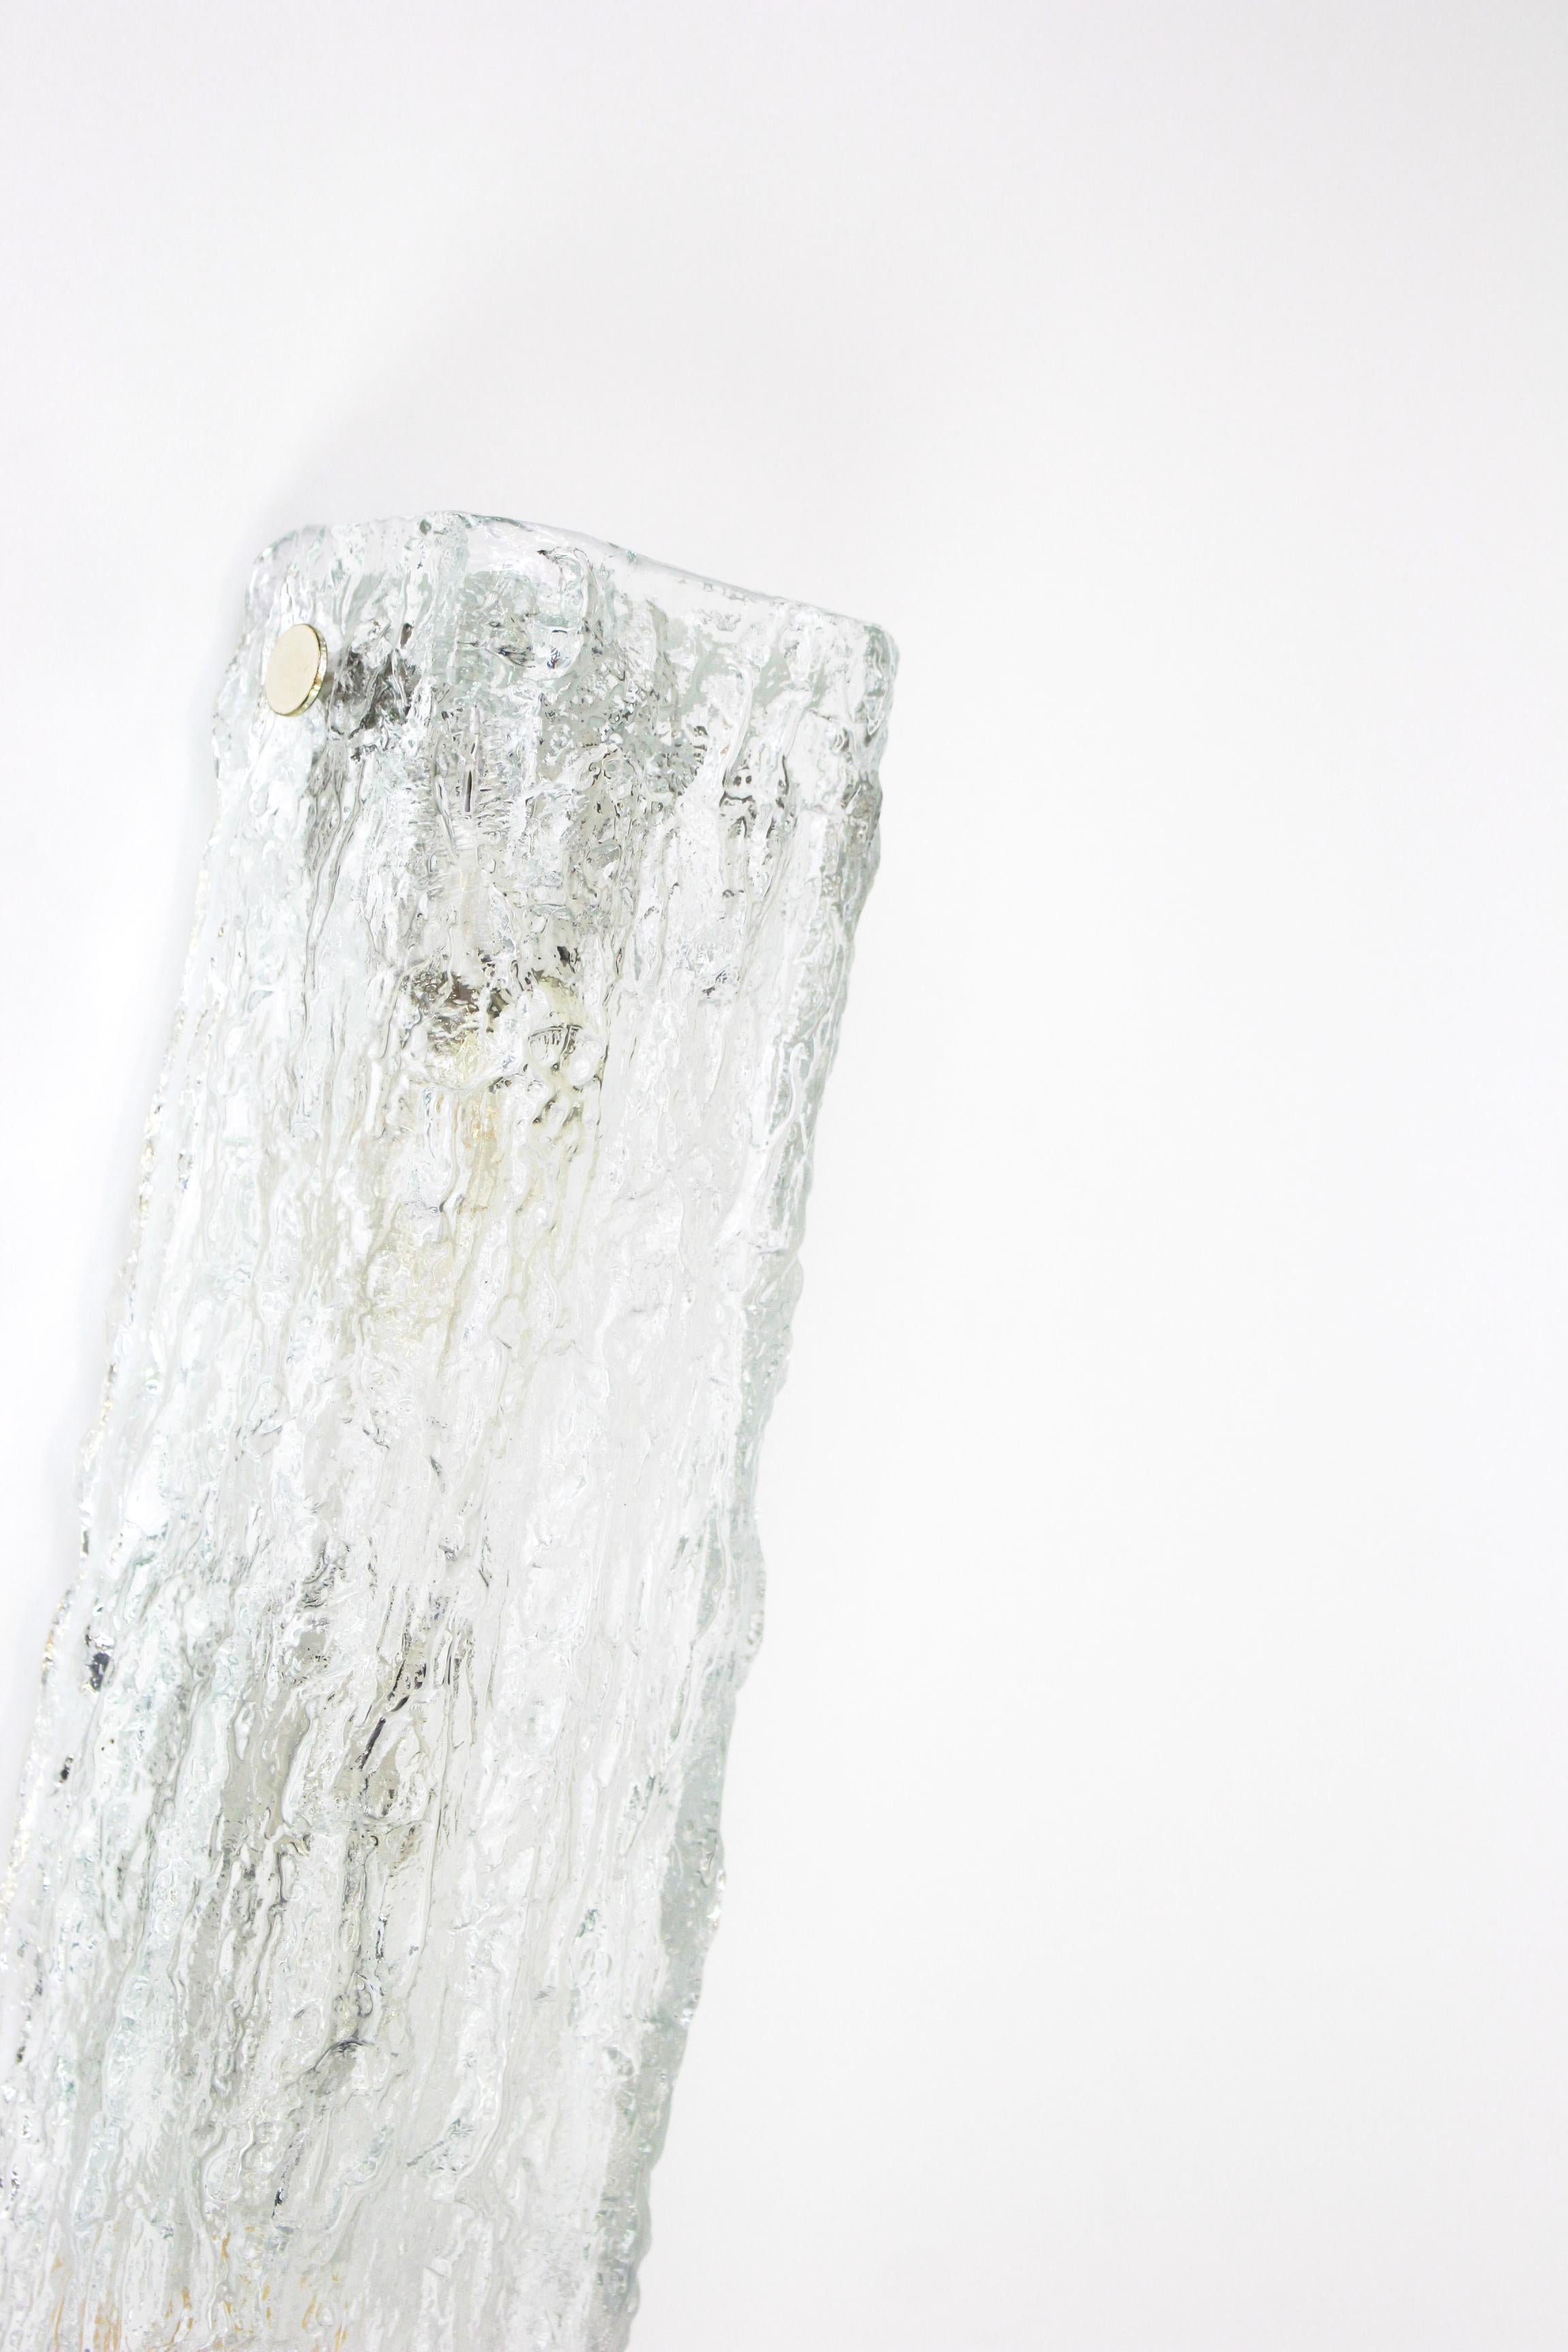 Magnifique ensemble de 2 appliques en verre de Murano par Kaiser Leuchten, Allemagne, vers les années 1970.

De grande qualité et en très bon état. Nettoyé, bien câblé et prêt à être utilisé.

Chaque luminaire nécessite trois petites ampoules E14 de